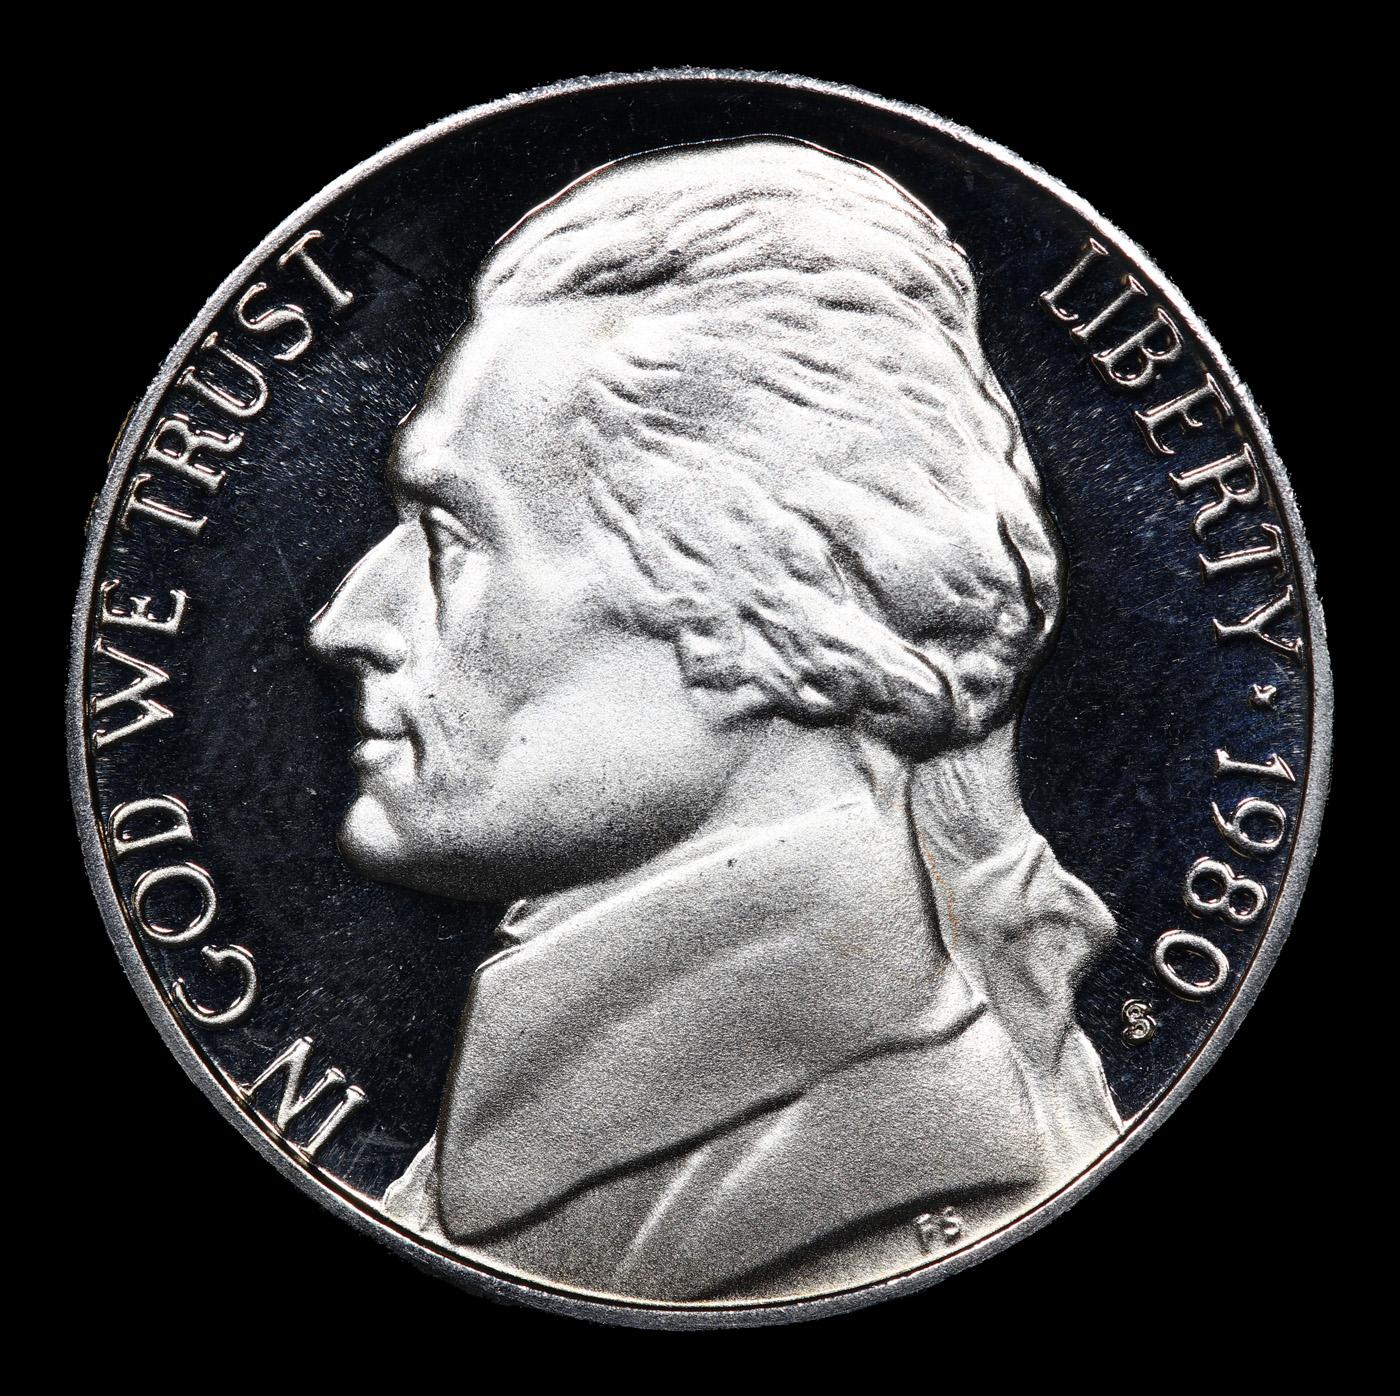 Proof 1980-s Jefferson Nickel 5c Graded pr70 dcam By SEGS